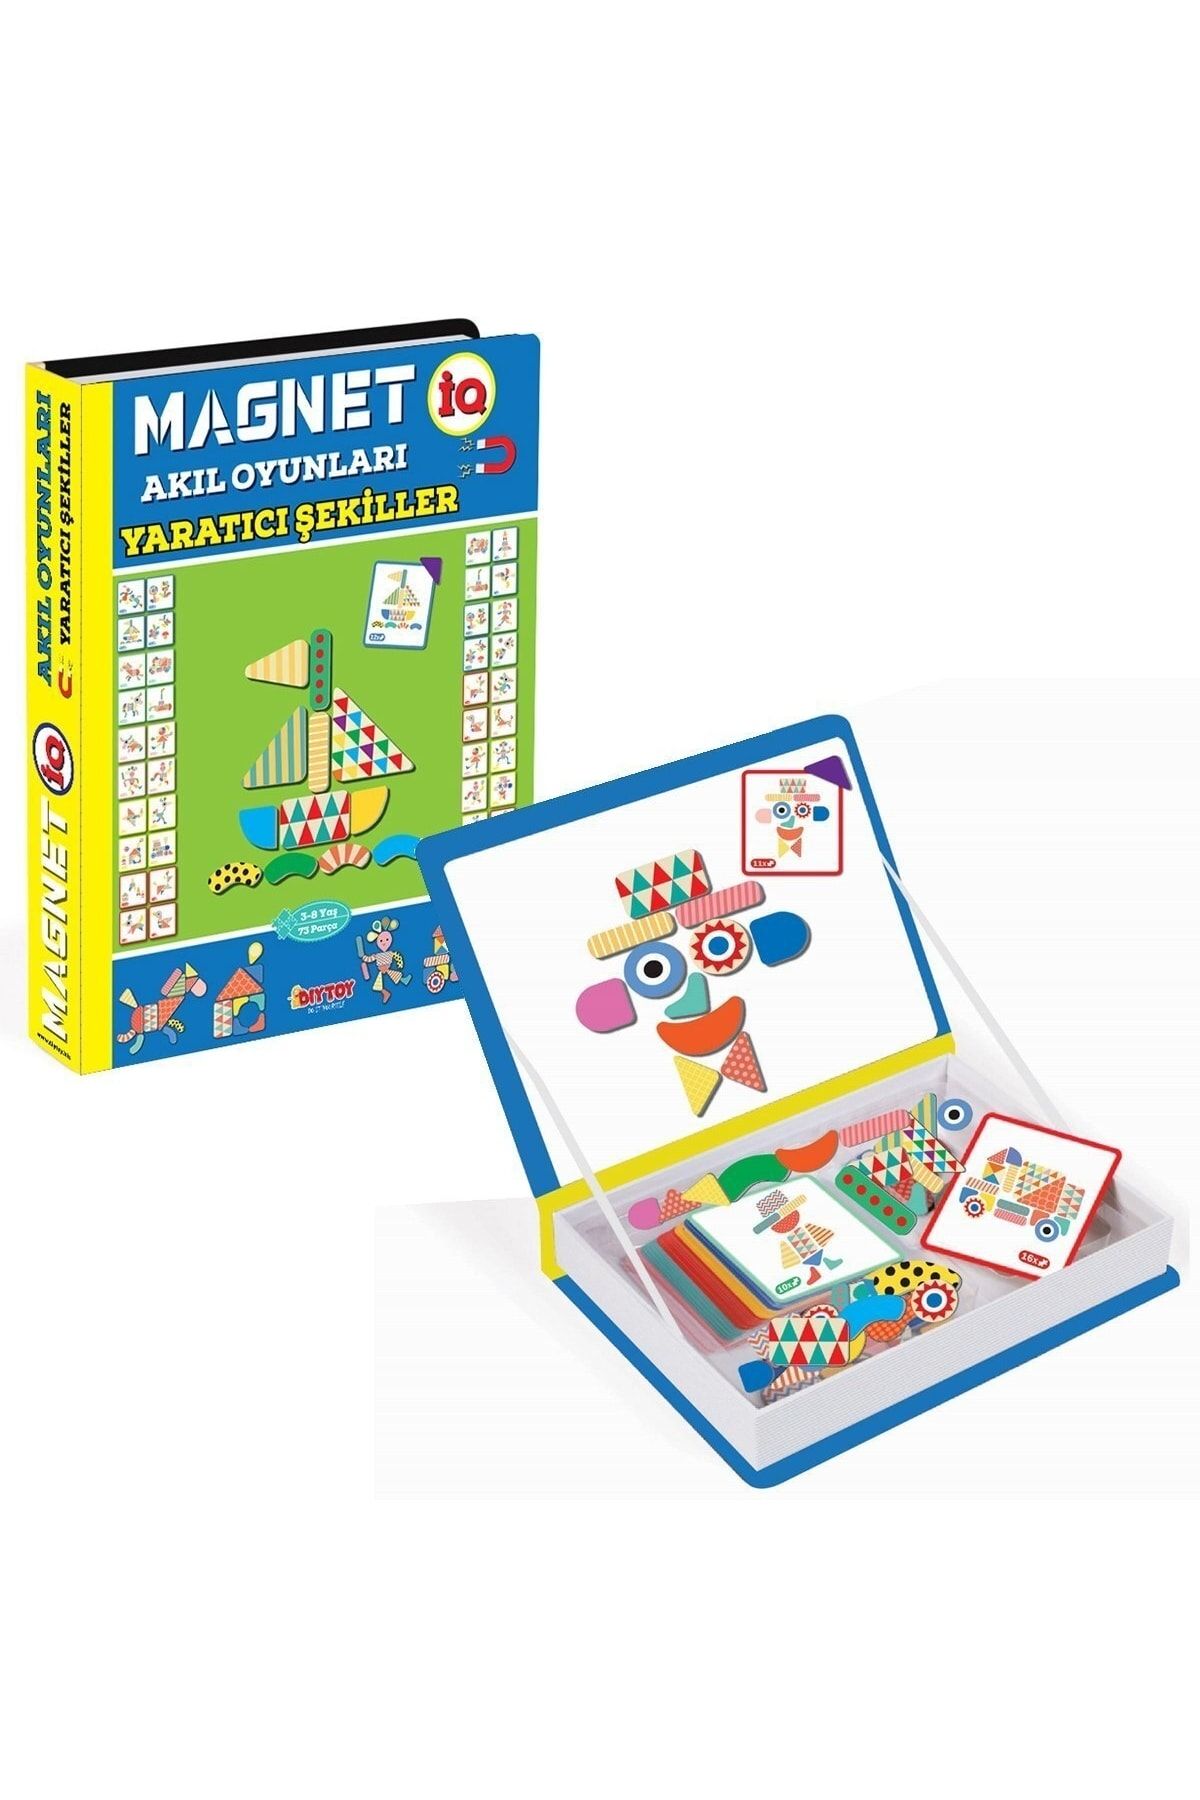 Diytoy Marka: 1550 Dıytoy, Magnet Akıl Oyunları - Yaratıcı Şekiller / 3-8 Yaş Kategori: Oyuncak Ar